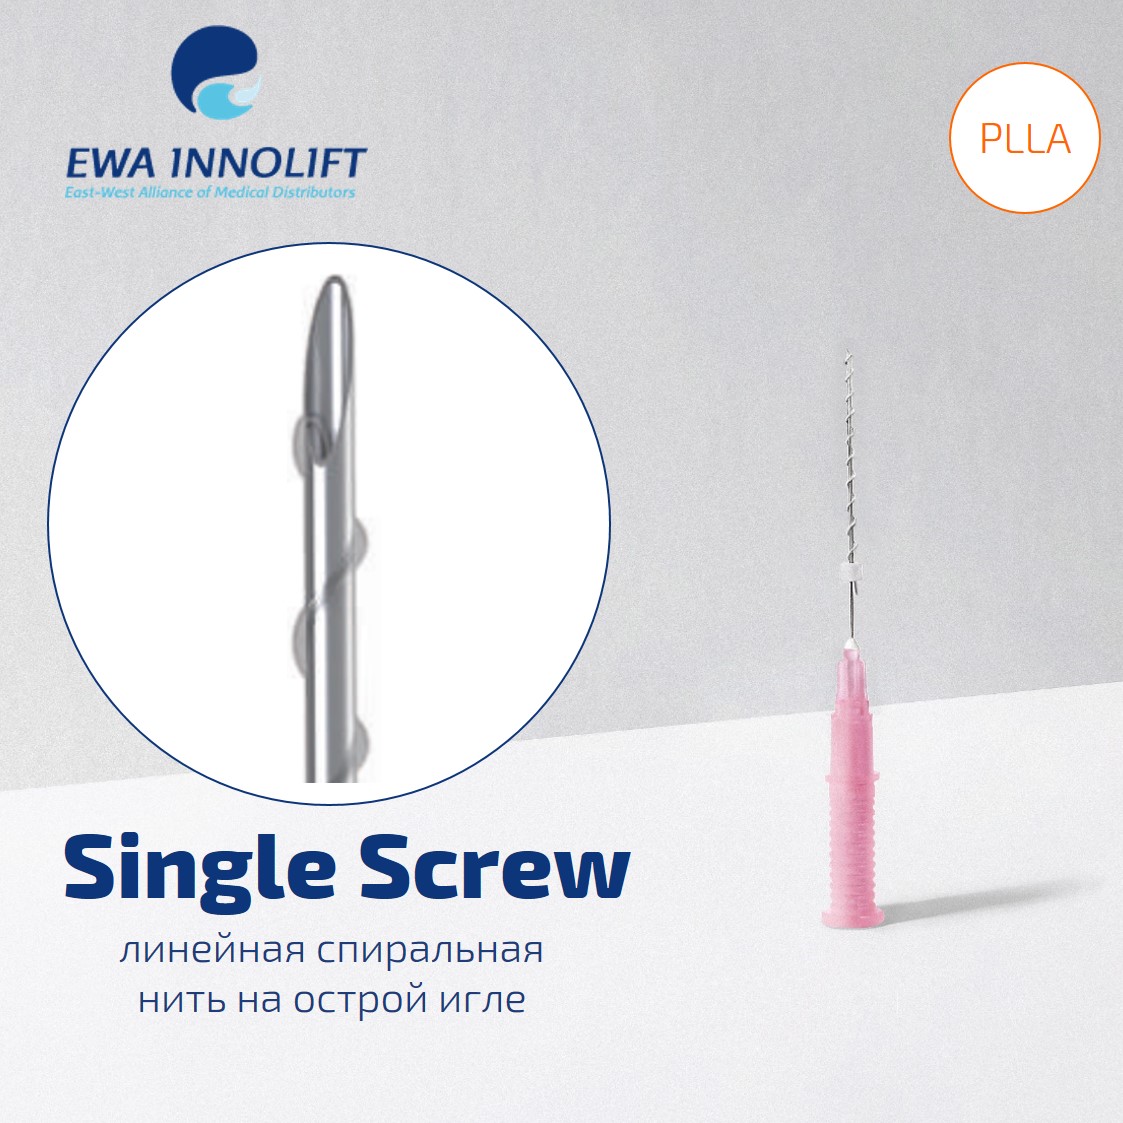 Нить из полимолочной кислоты обычная на полой игле нить спираль/ Single Screw (Sharp Needle) PLLA